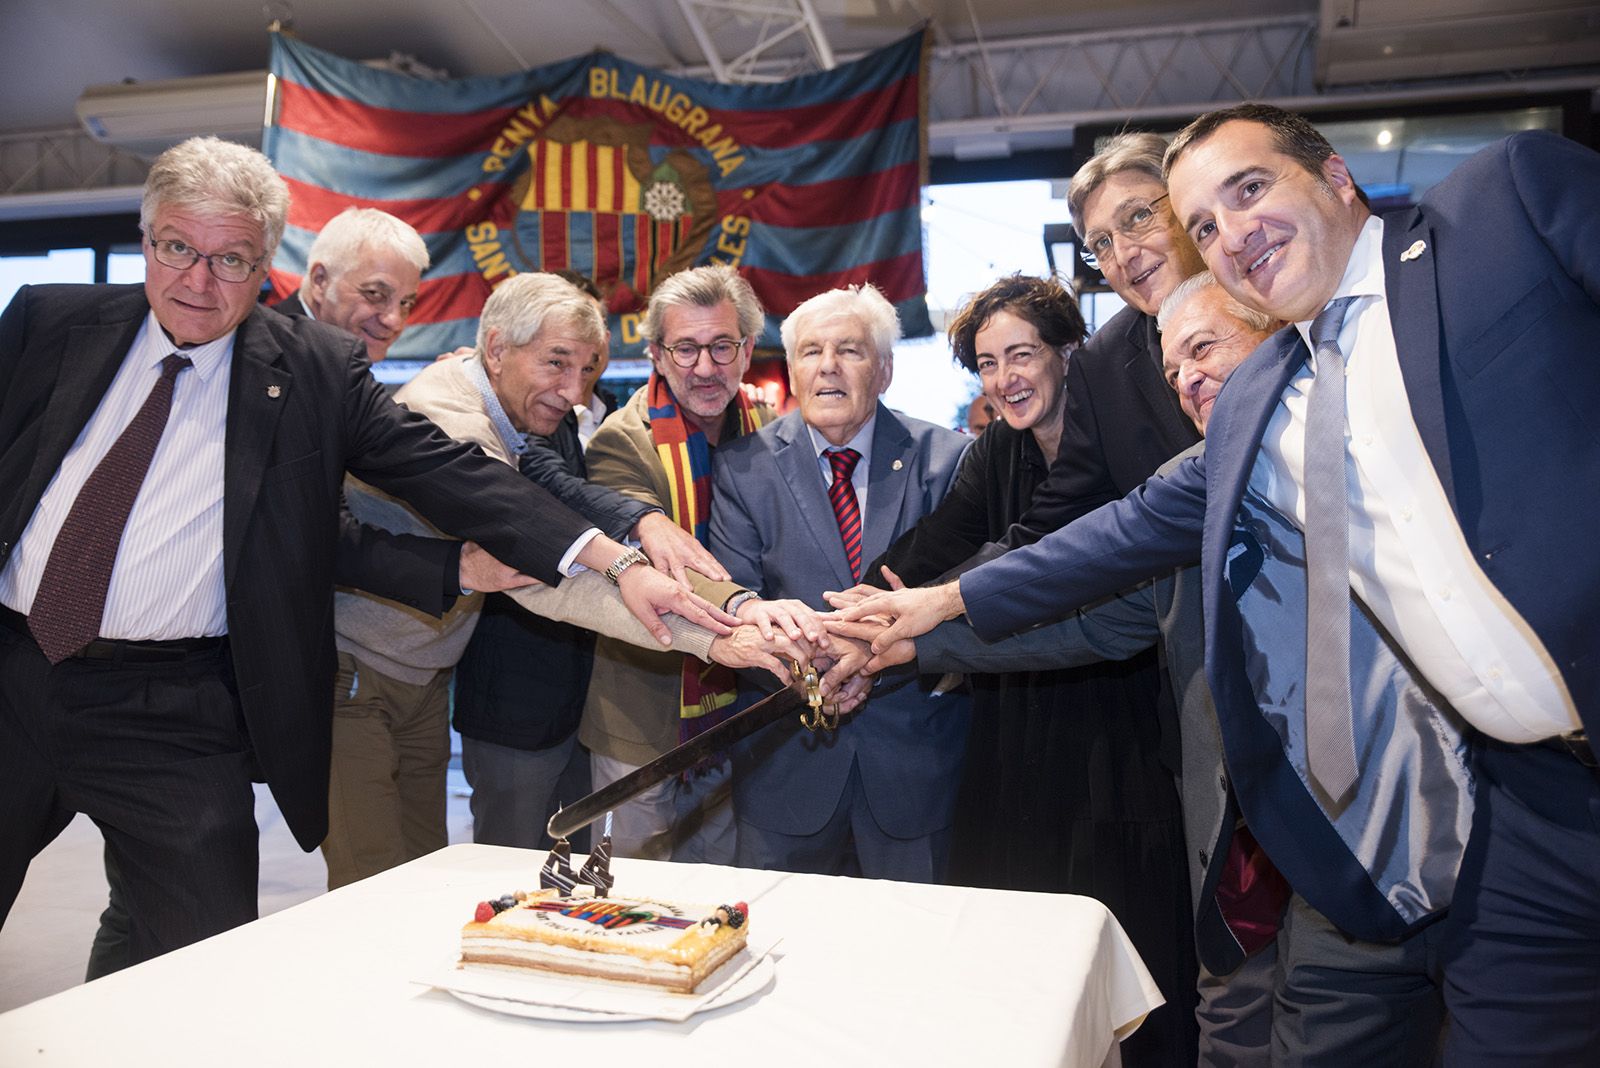 44è aniversari de la Penya Blaugrana de Sant Cugat. FOTO: Bernat Millet.